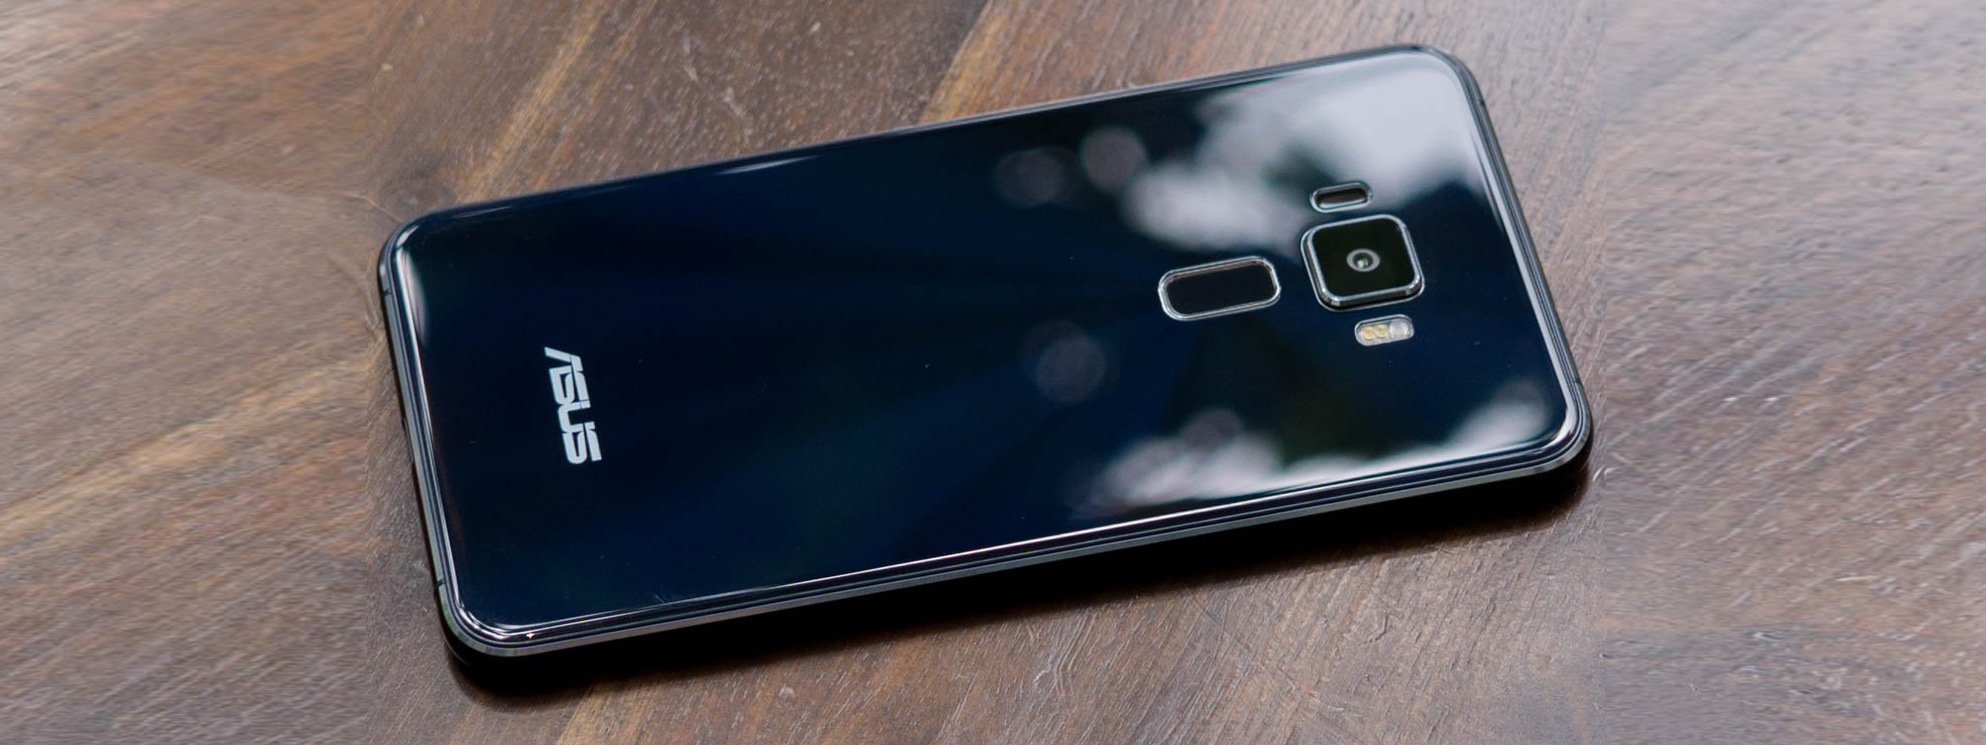 Đánh giá Asus ZenFone 3: đưa Zen lên một tầm cao mới